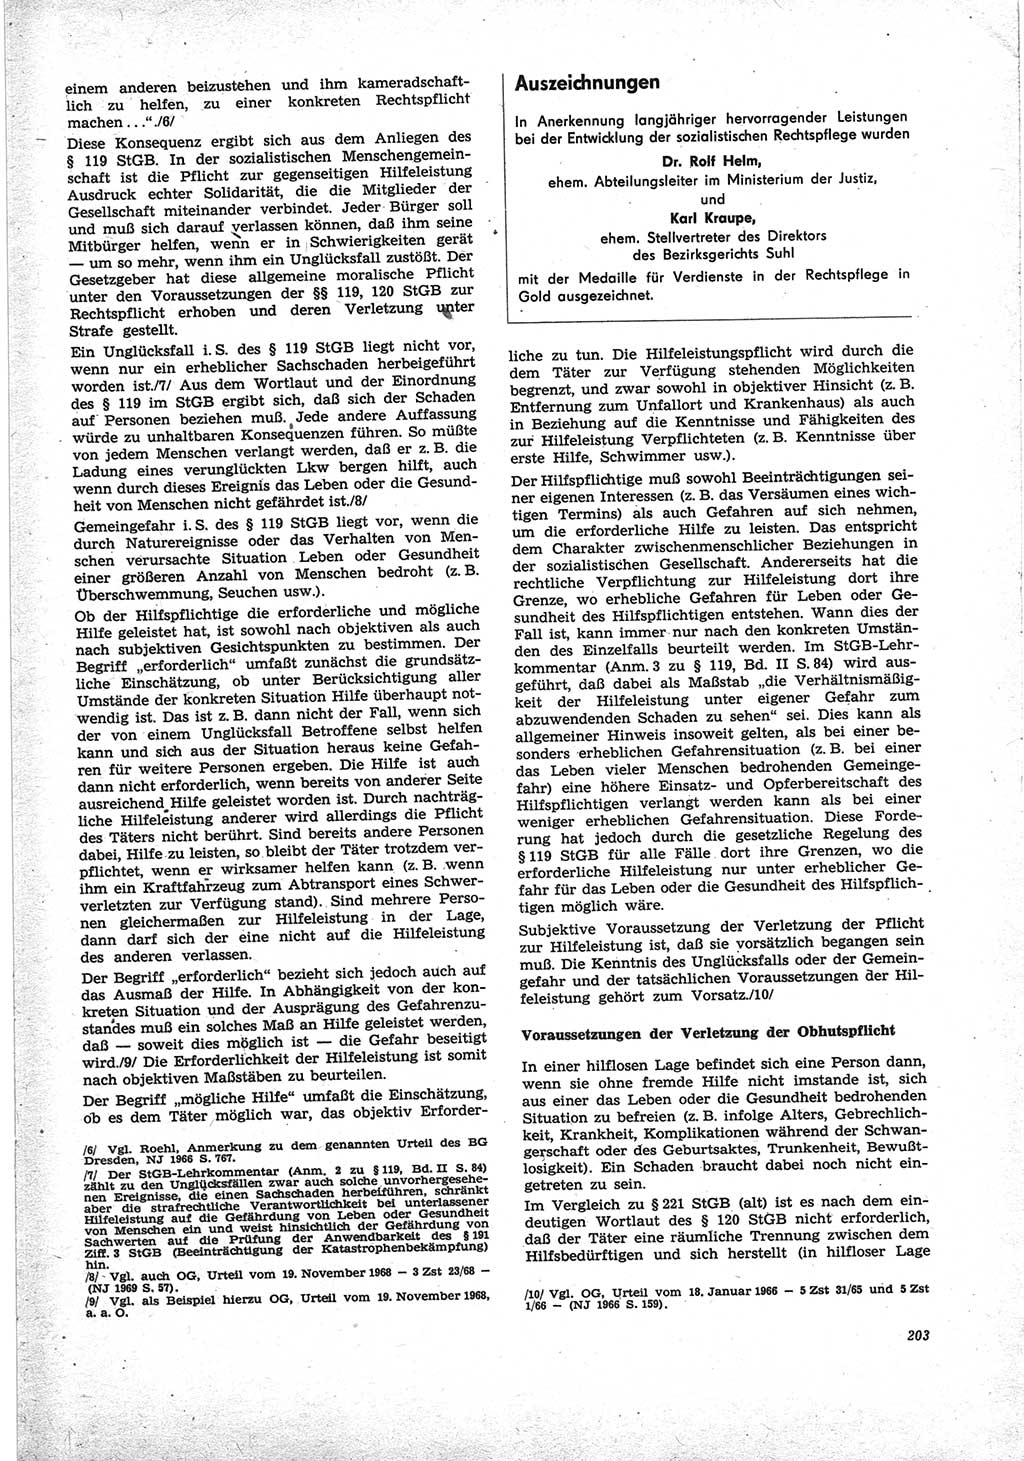 Neue Justiz (NJ), Zeitschrift für Recht und Rechtswissenschaft [Deutsche Demokratische Republik (DDR)], 25. Jahrgang 1971, Seite 203 (NJ DDR 1971, S. 203)